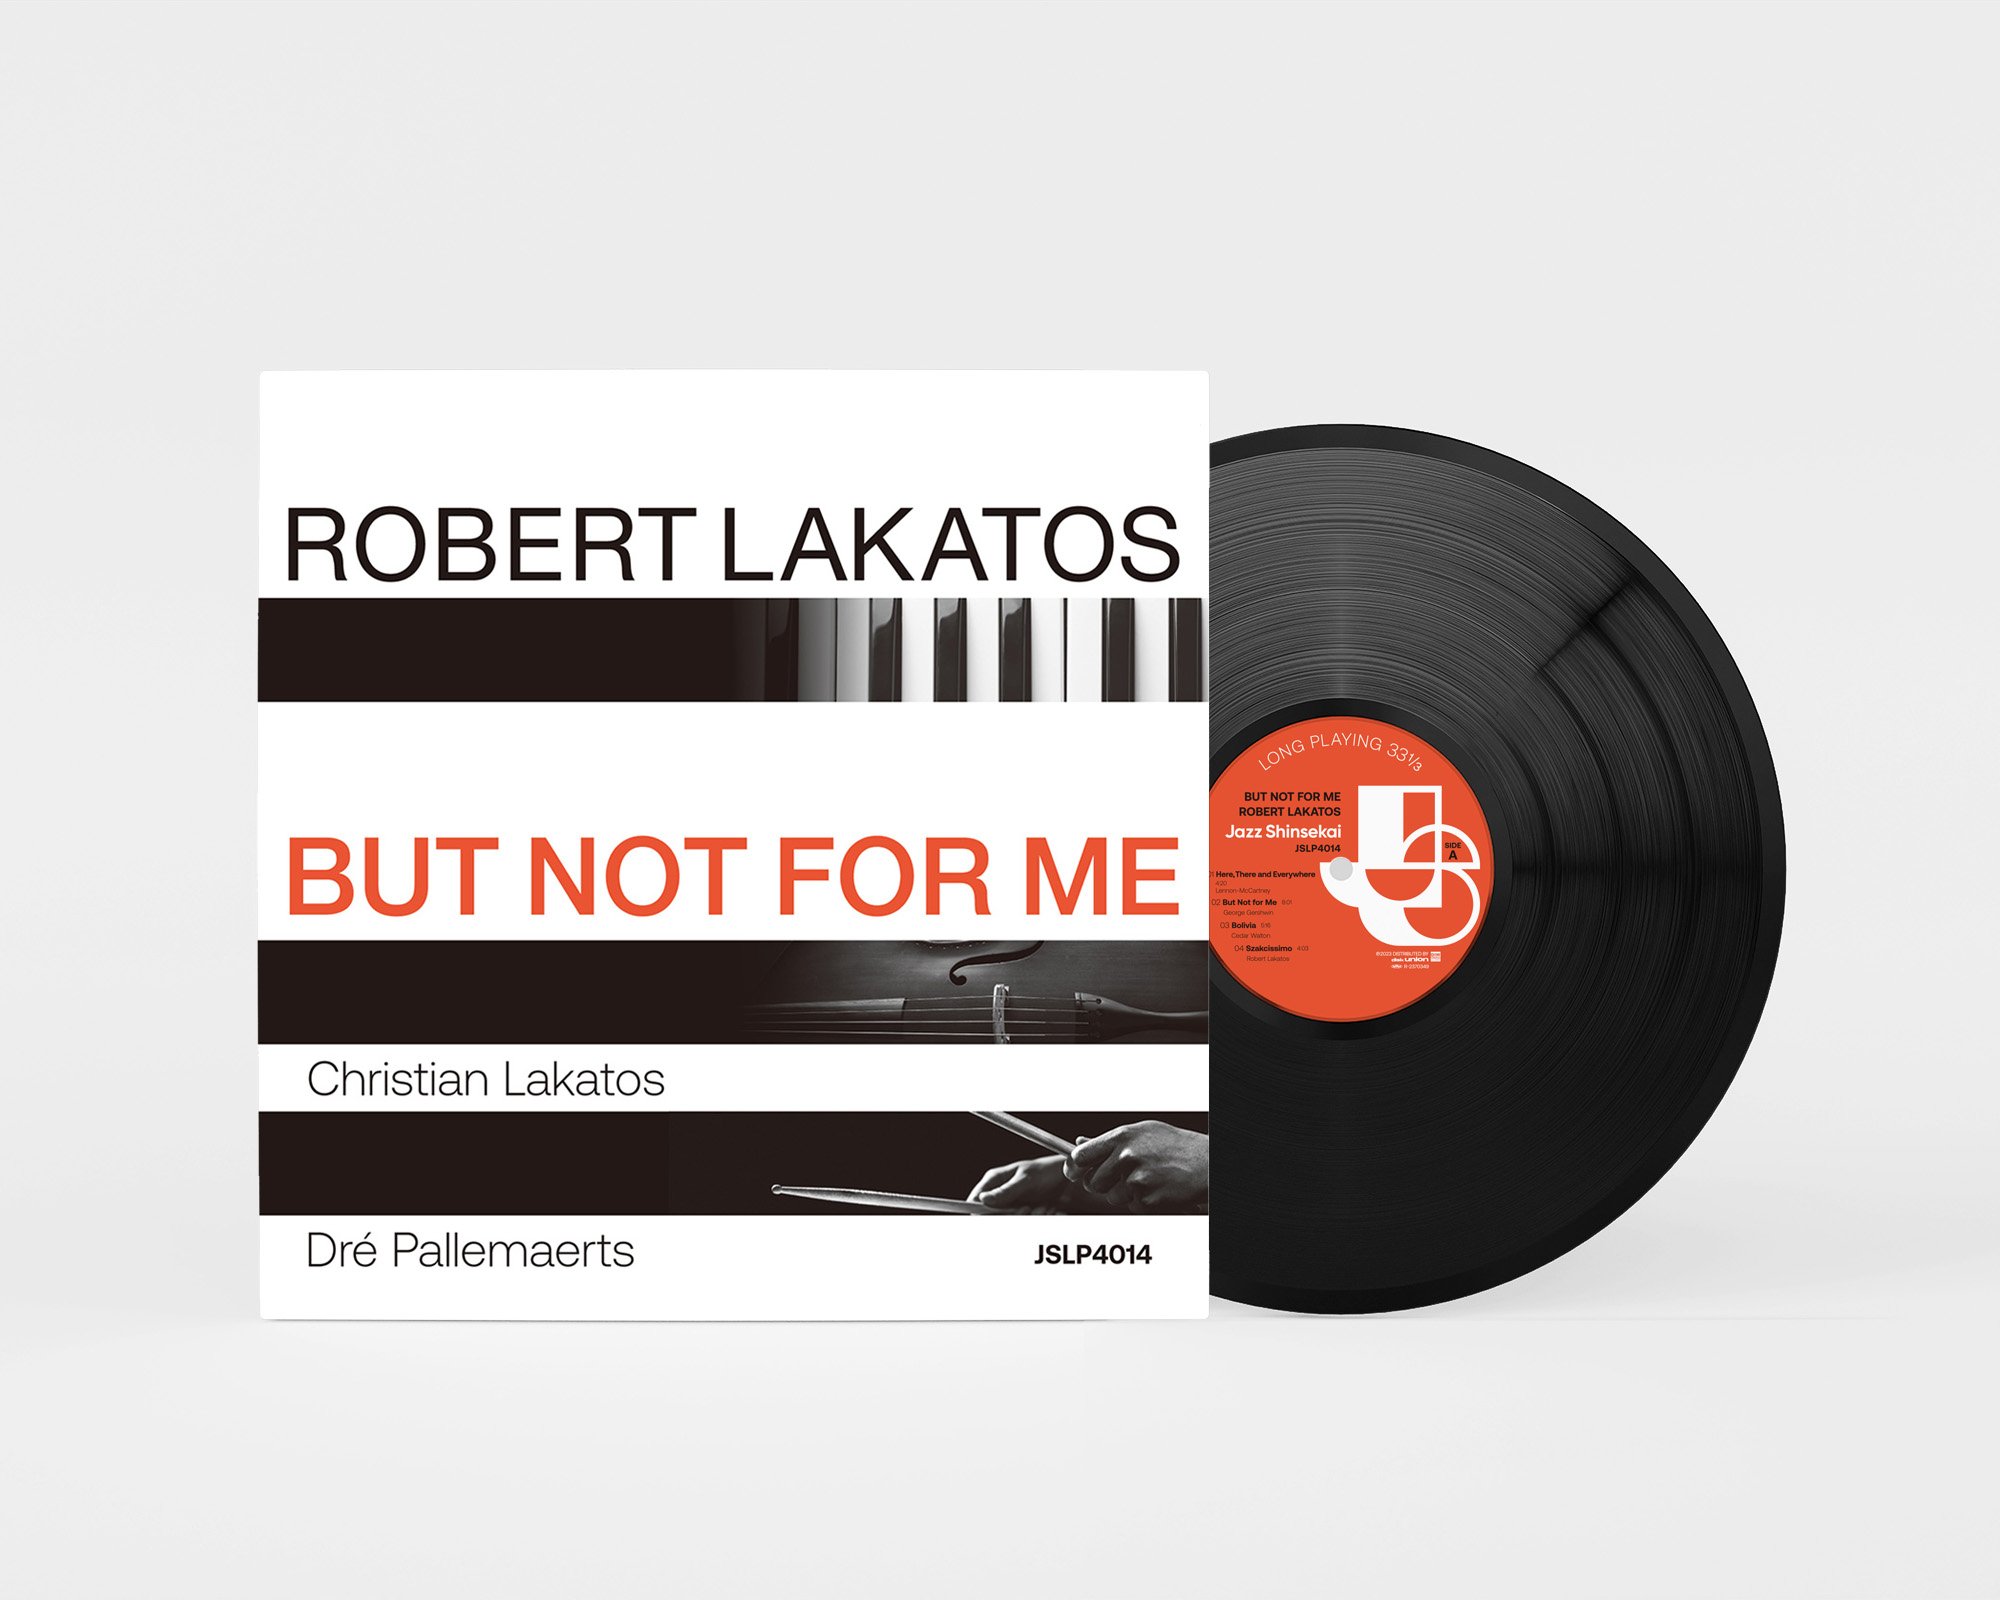 JSLP4014 ROBERT LAKATOS - BUT NOT FOR ME